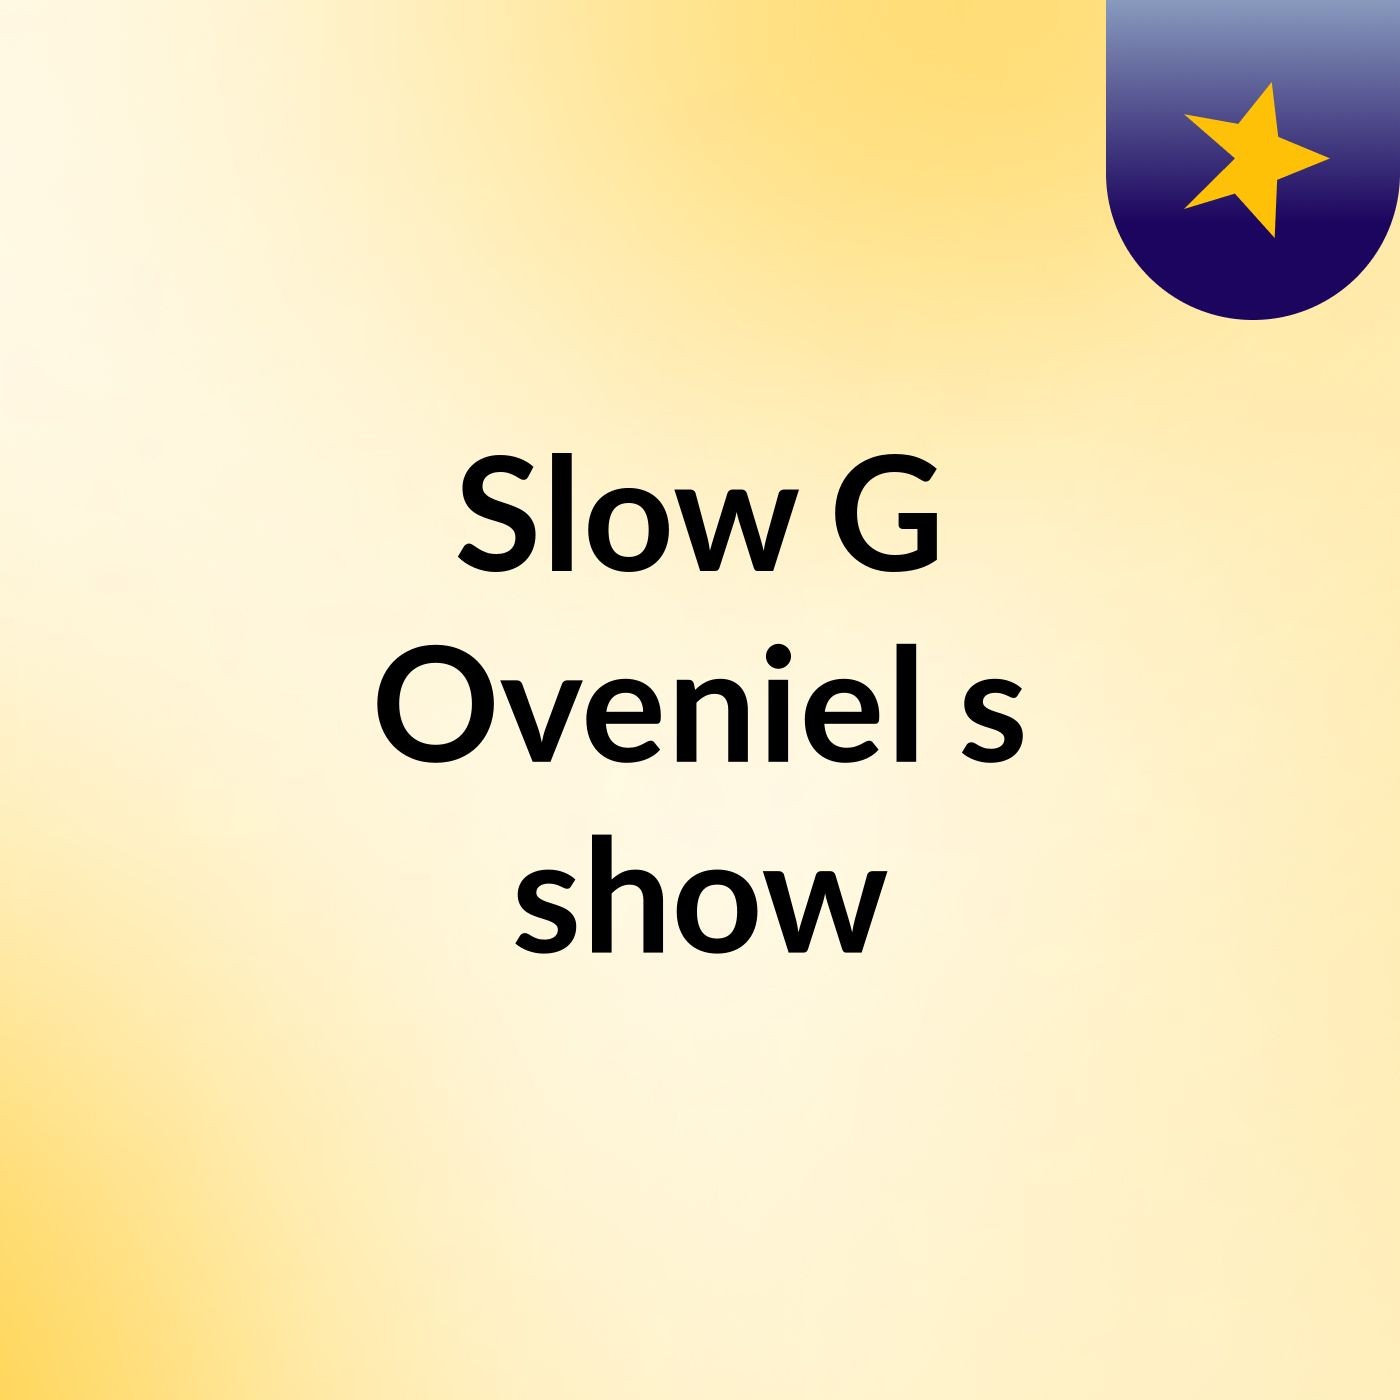 Slow G Oveniel's show